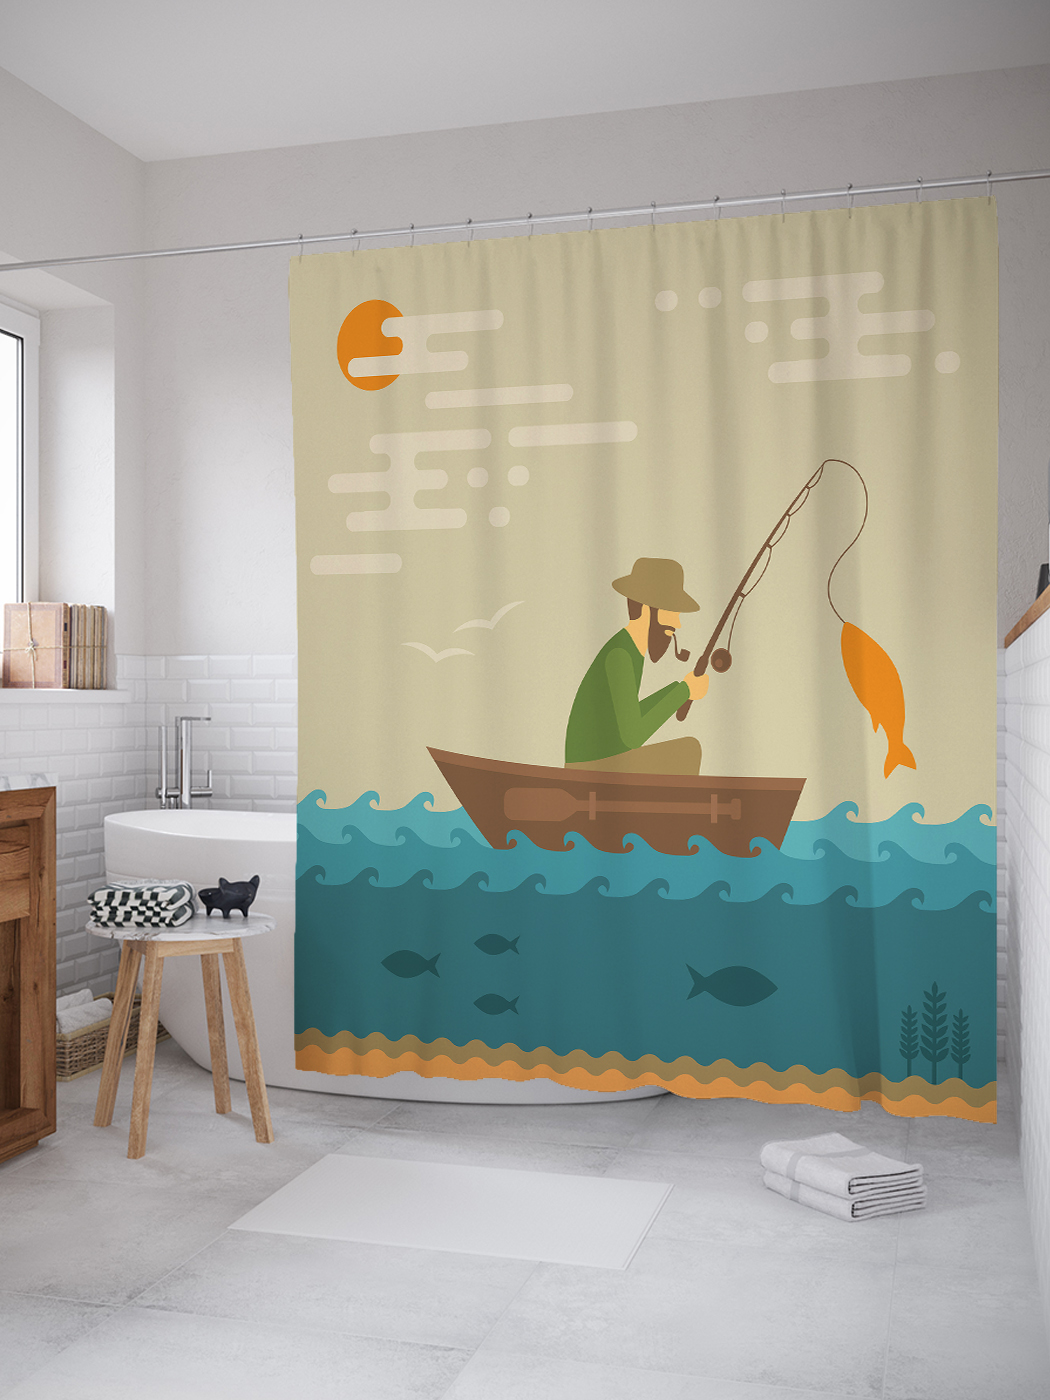 фото Joyarty штора (занавеска) для ванной «успешная рыбалка» из ткани, 180х200 см с крючками